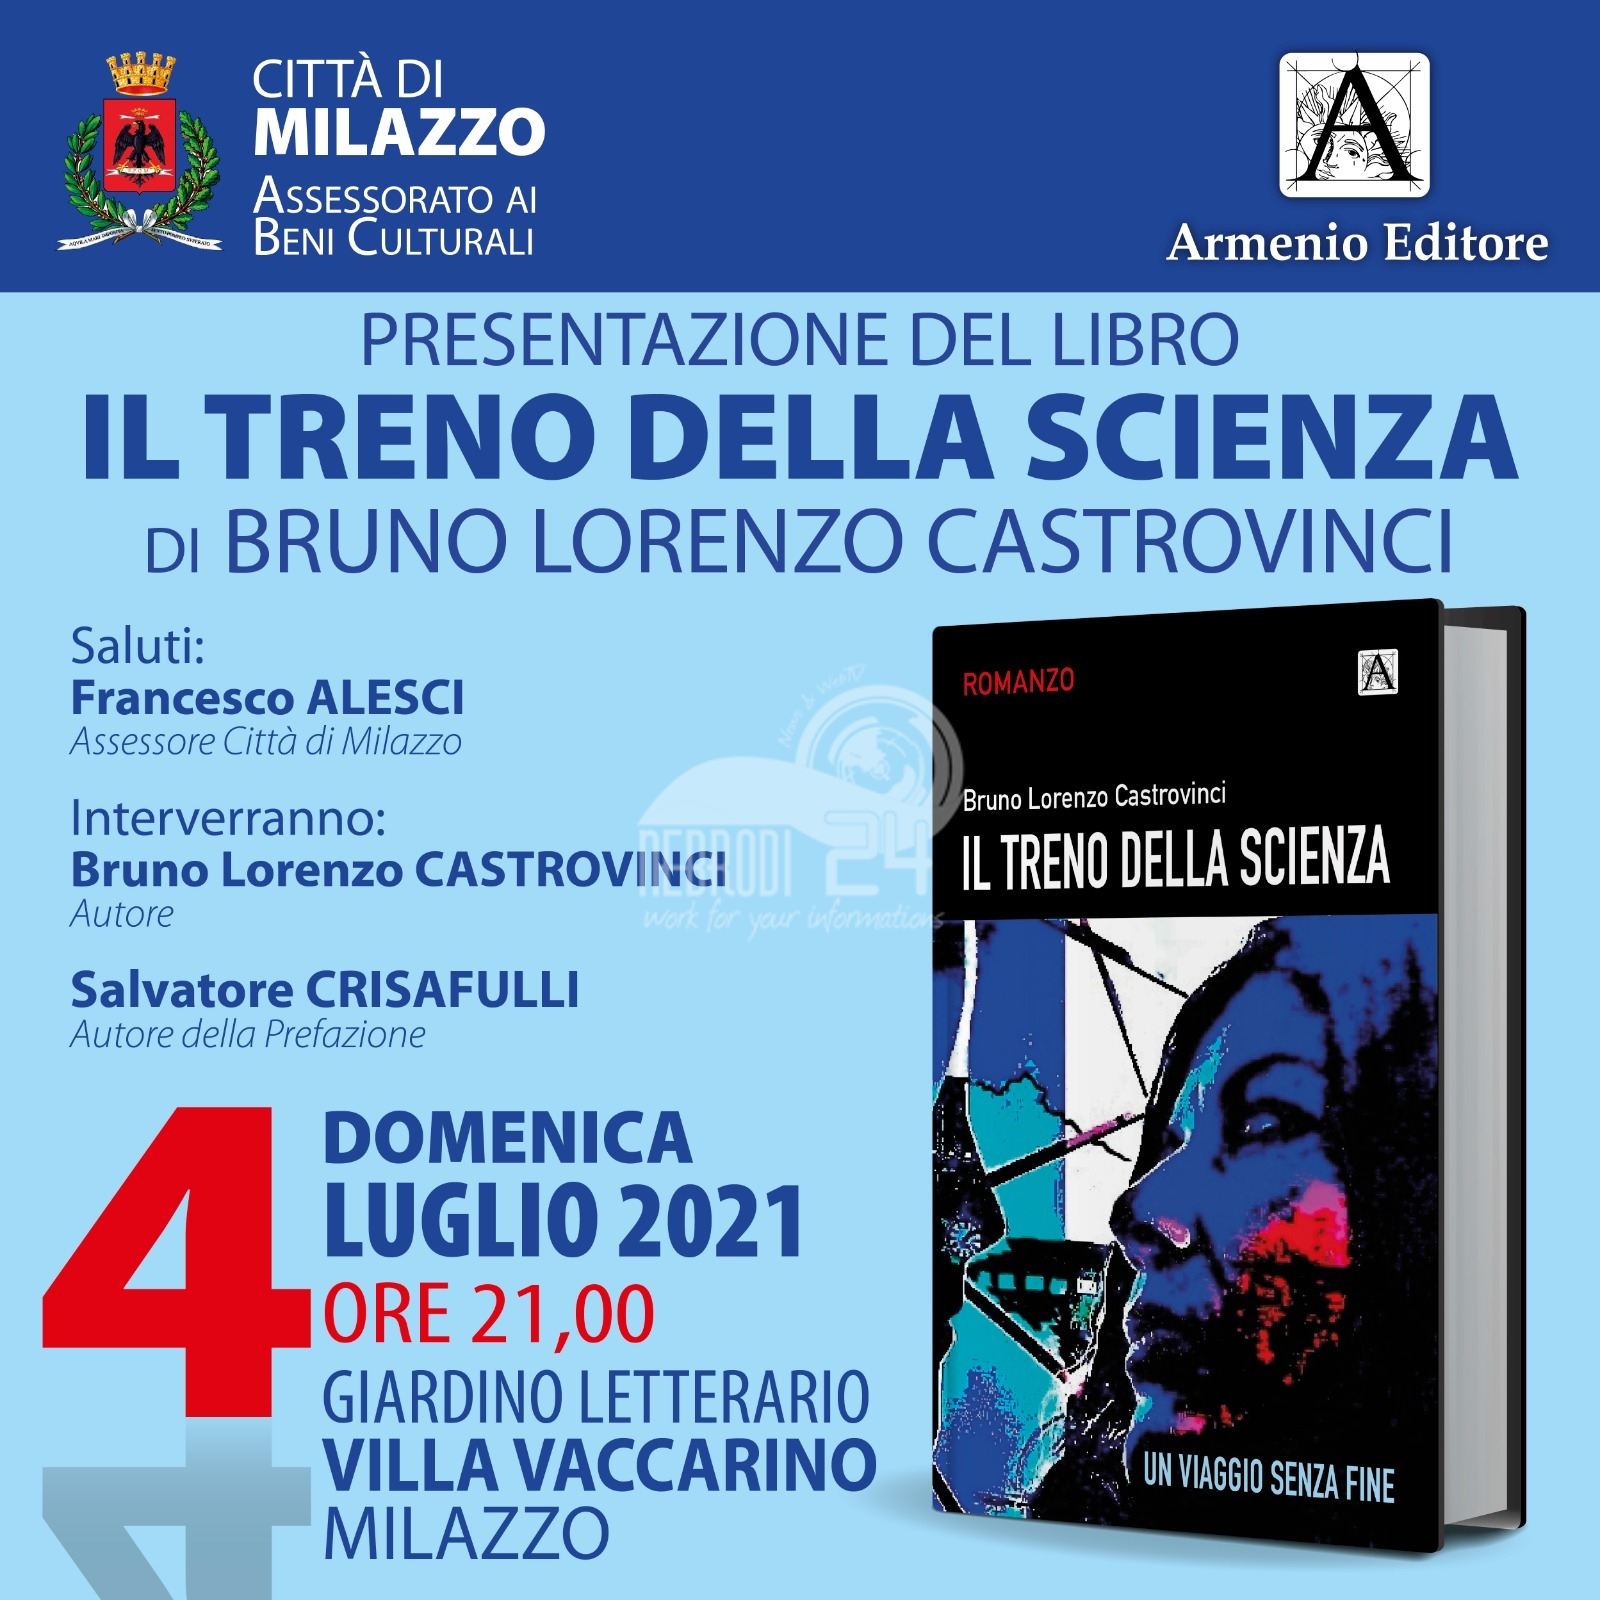 Milazzo – La presentazione del libro “Il Treno della Scienza” di Bruno Lorenzo Castrovinci